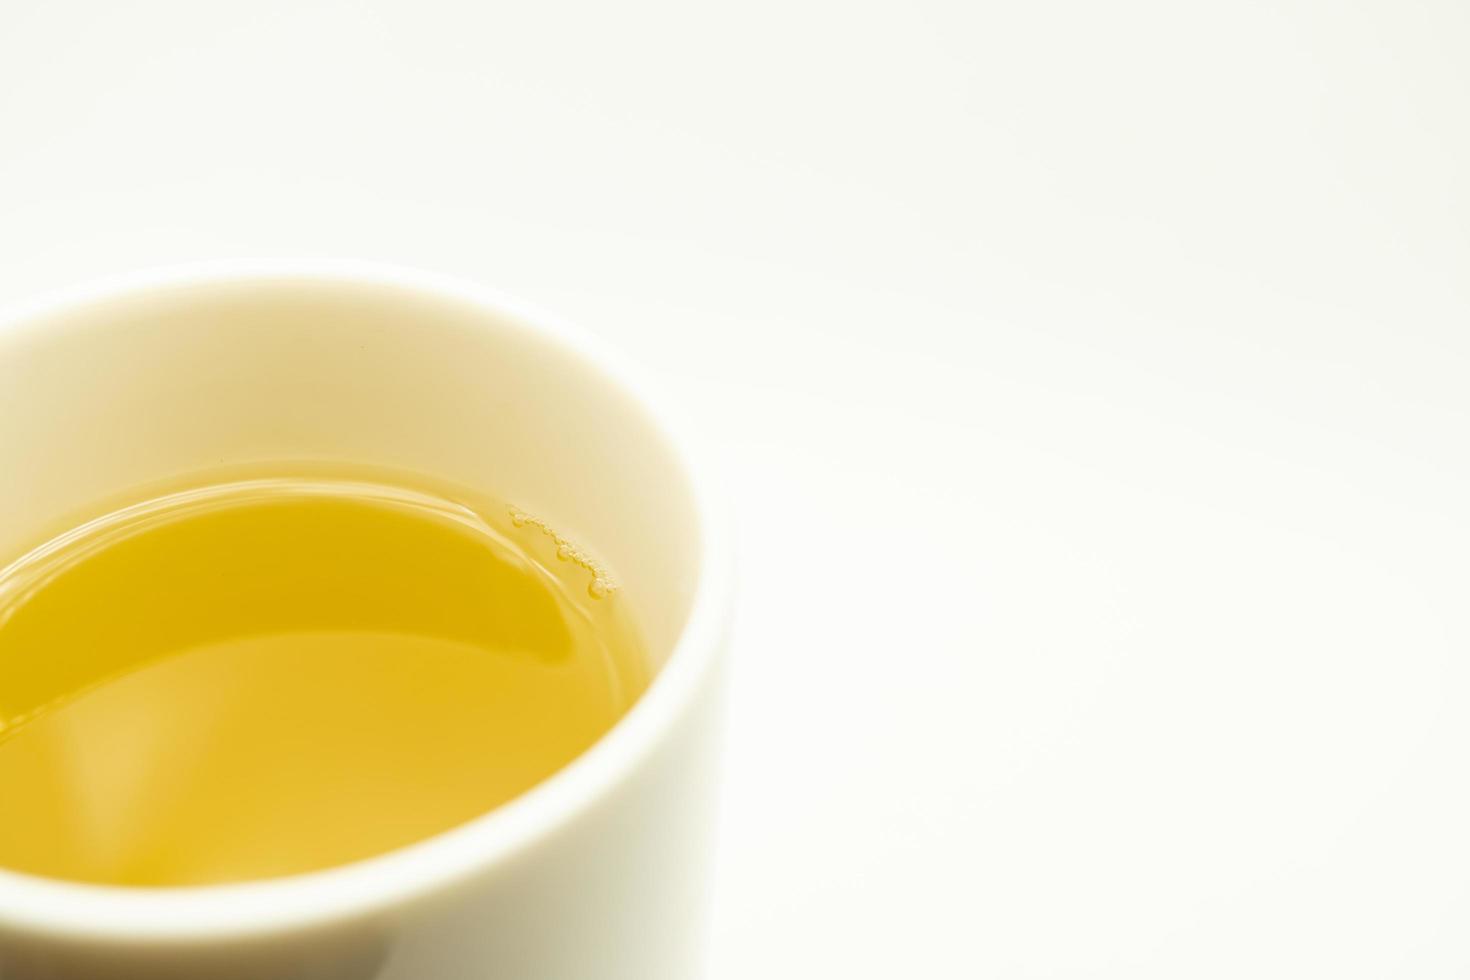 thé vert sur fond blanc. image de thé vert japonais. tasse de thé isolé sur fond blanc photo